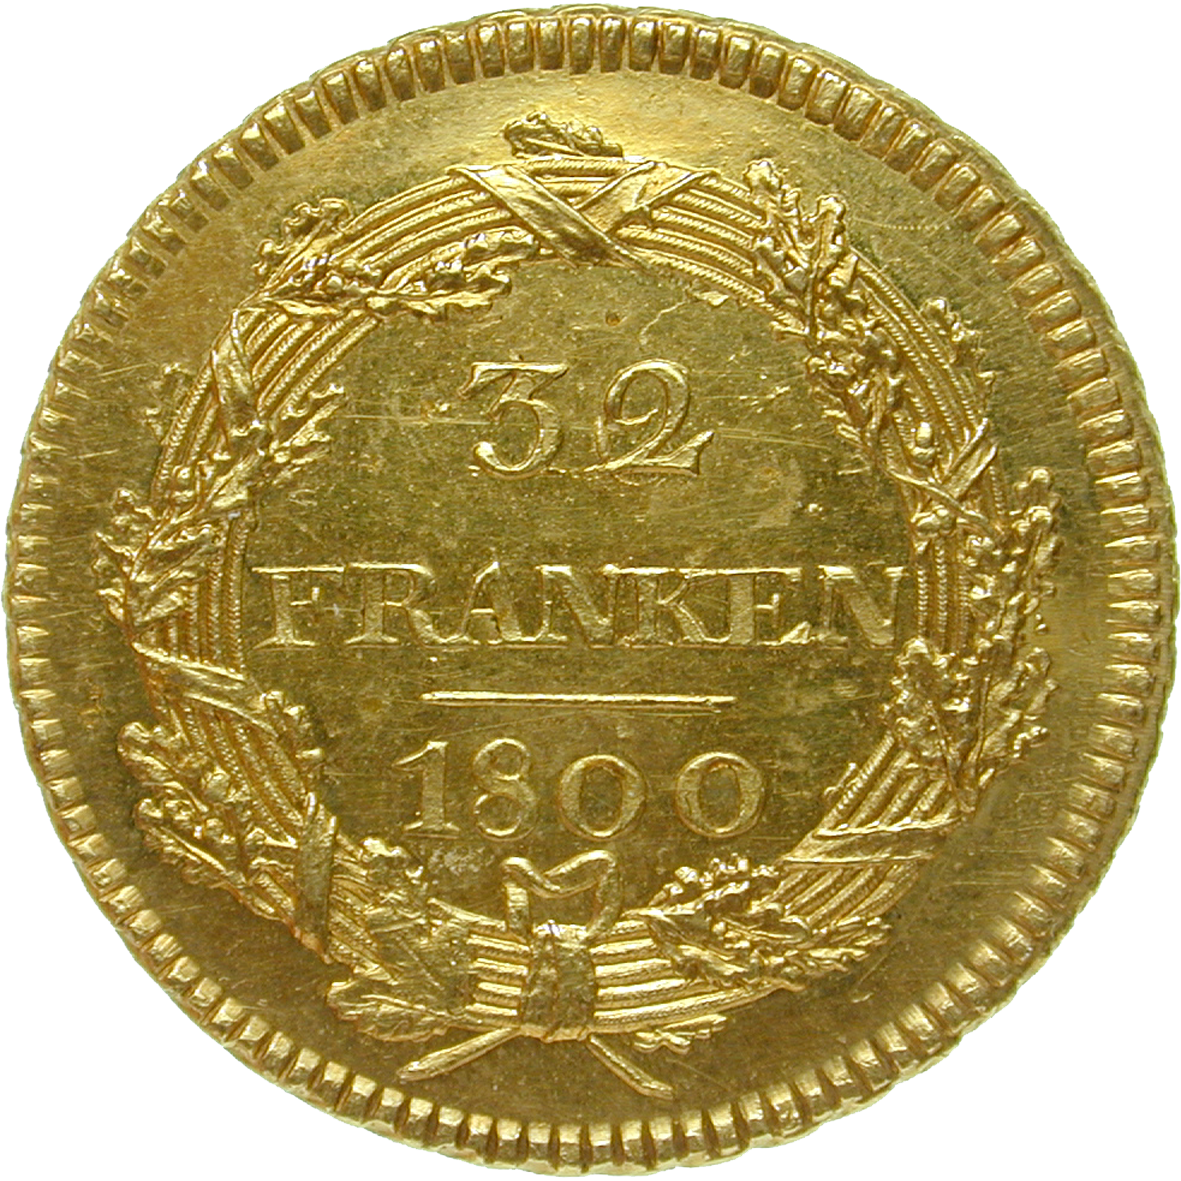 Helvetische Republik, 32 Franken 1800 (reverse)